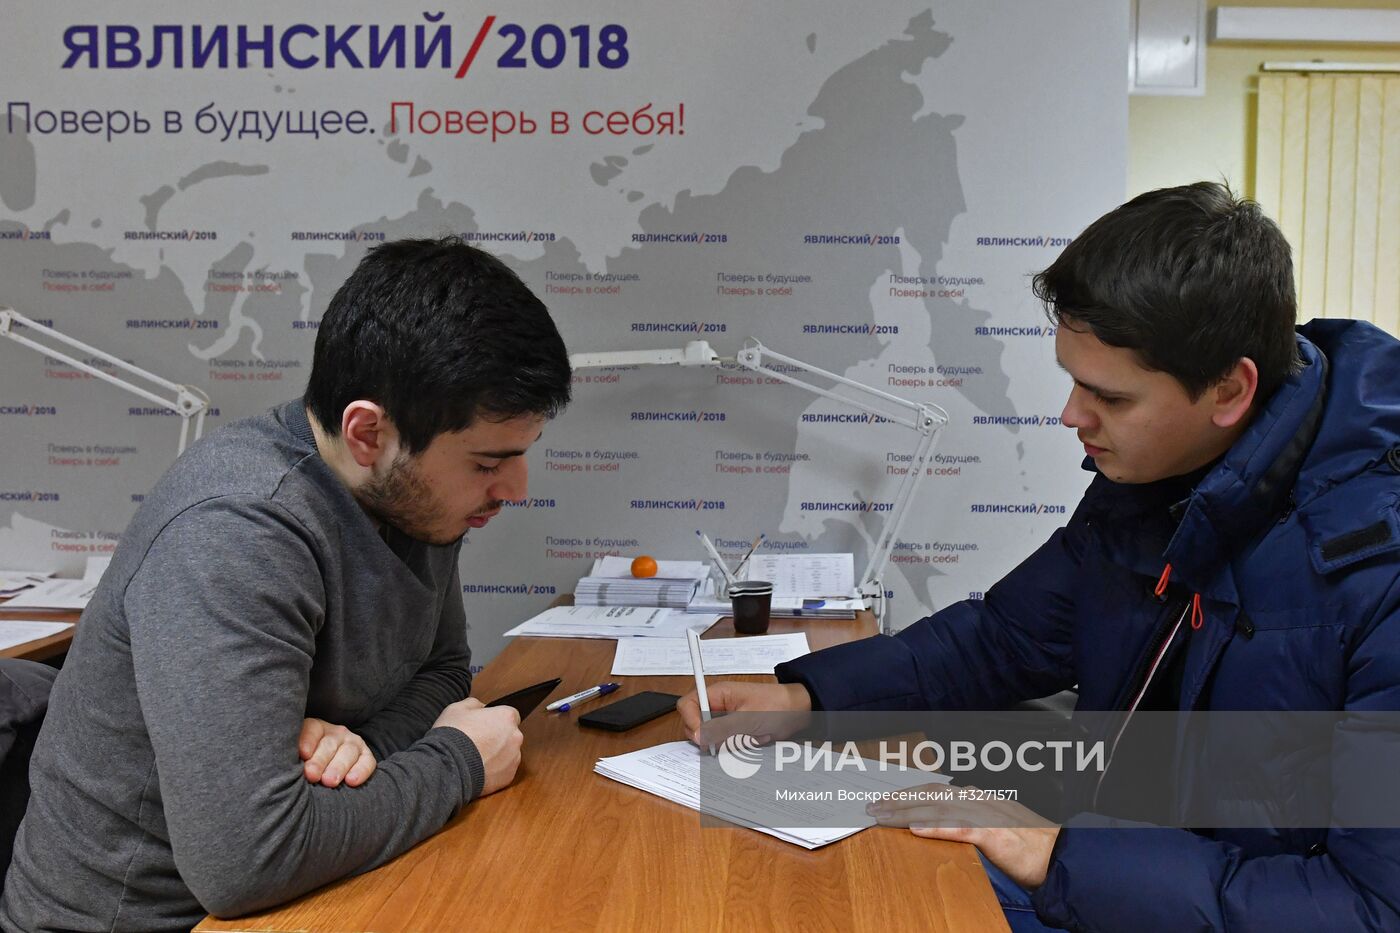 Сбор подписей в поддержку Г. Явлинского на президентских выборах в 2018 году